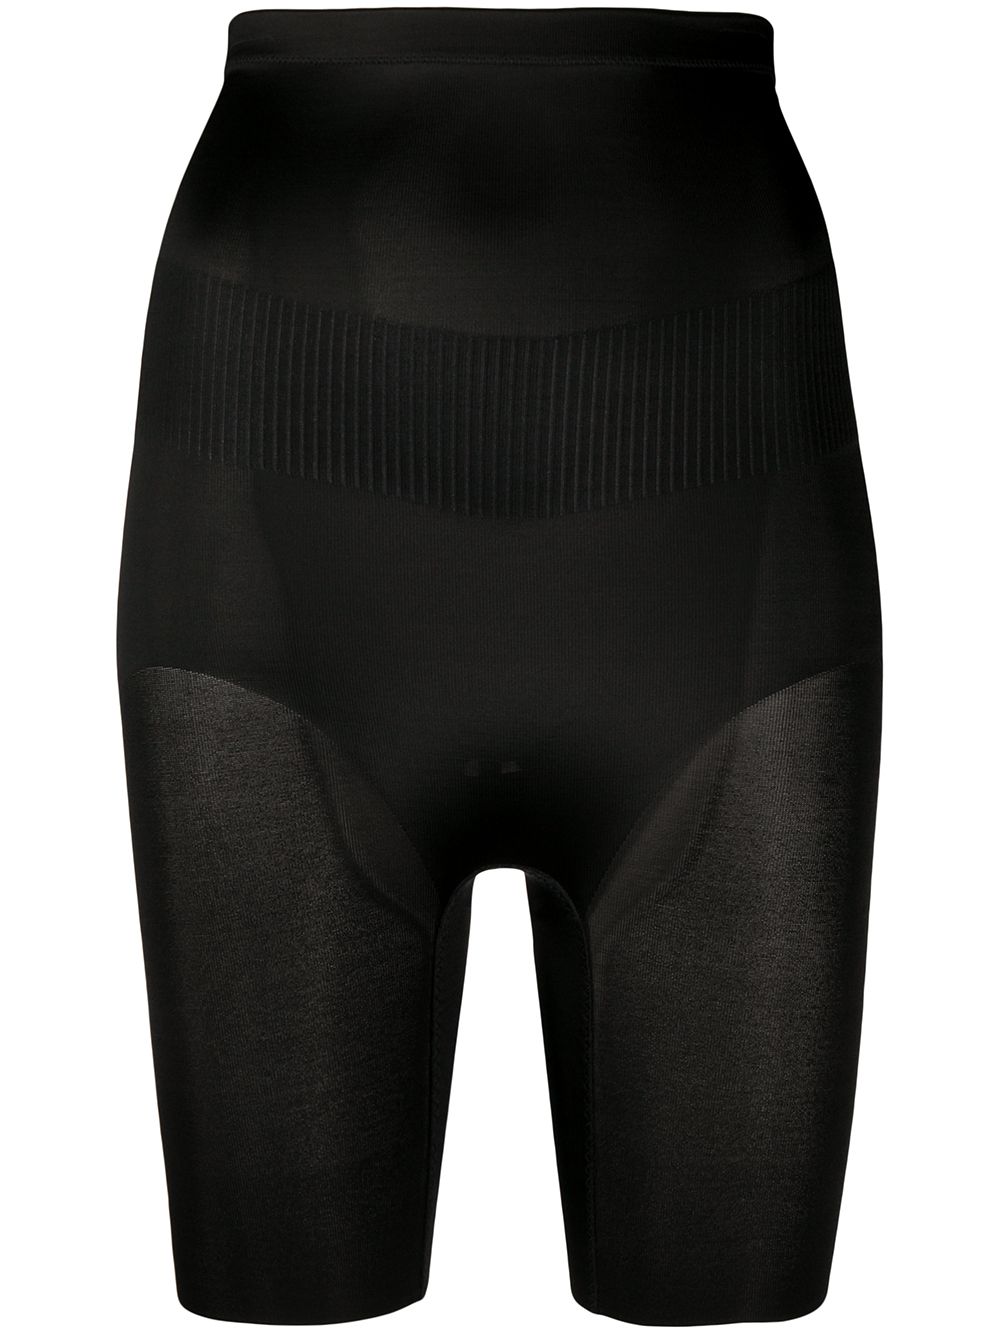 Wacoal Fit & Lift leg shaper shorts - Black von Wacoal